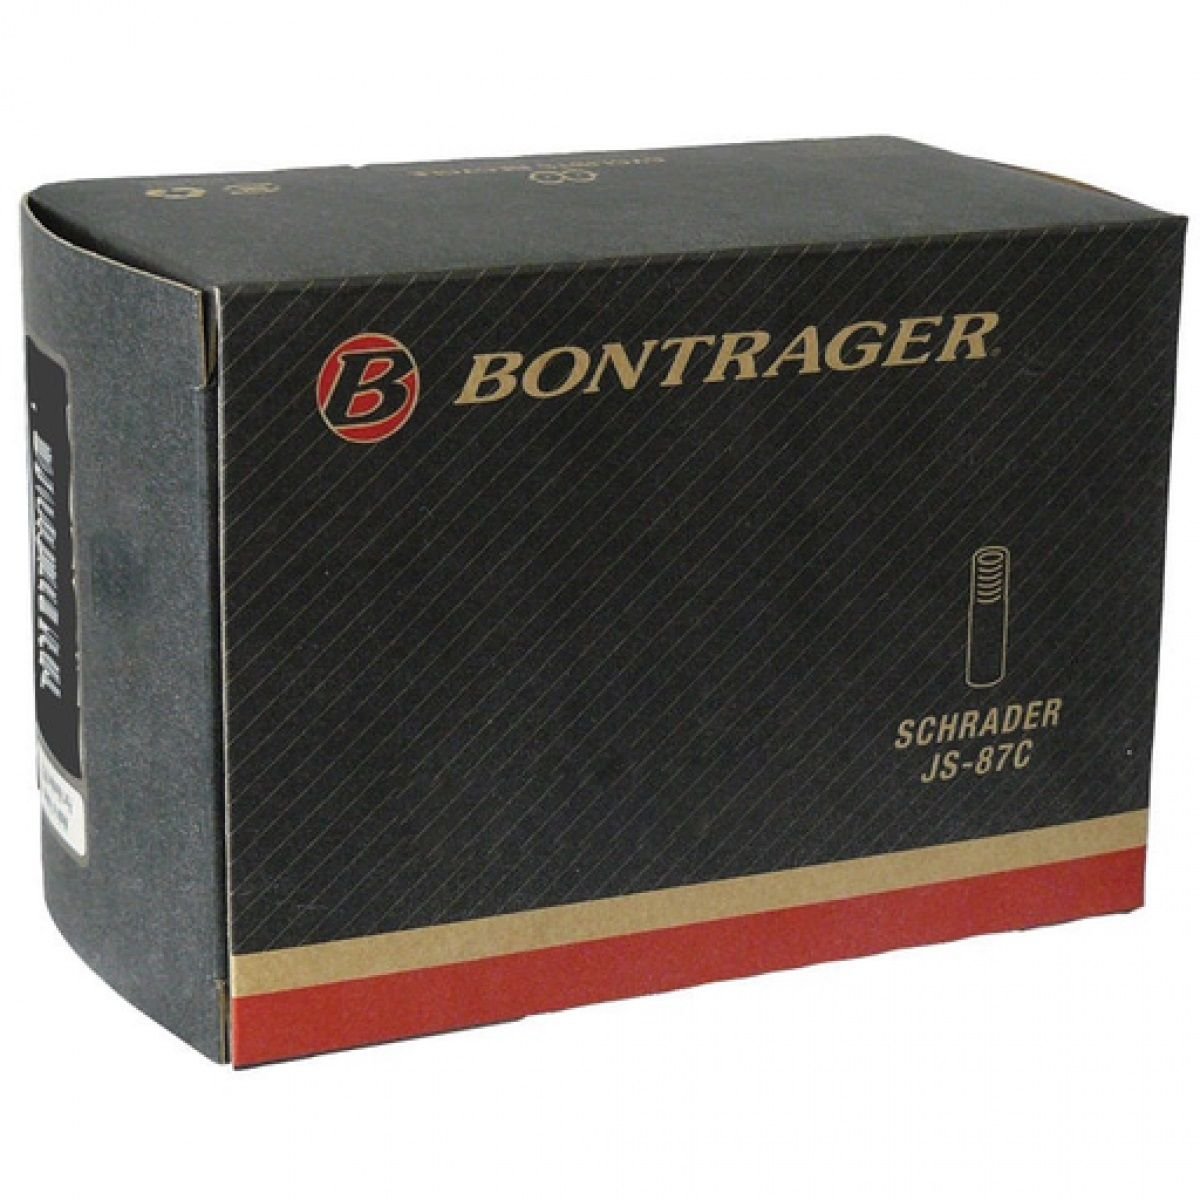 Камера велосипедная Bontrager Standard, 12 1/2X2 1/4, SV, TCG-66943 камера велосипедная bontrager standard 700x28 32c 27x1 1 8 1 1 4 schrader 48mm tcg 432454